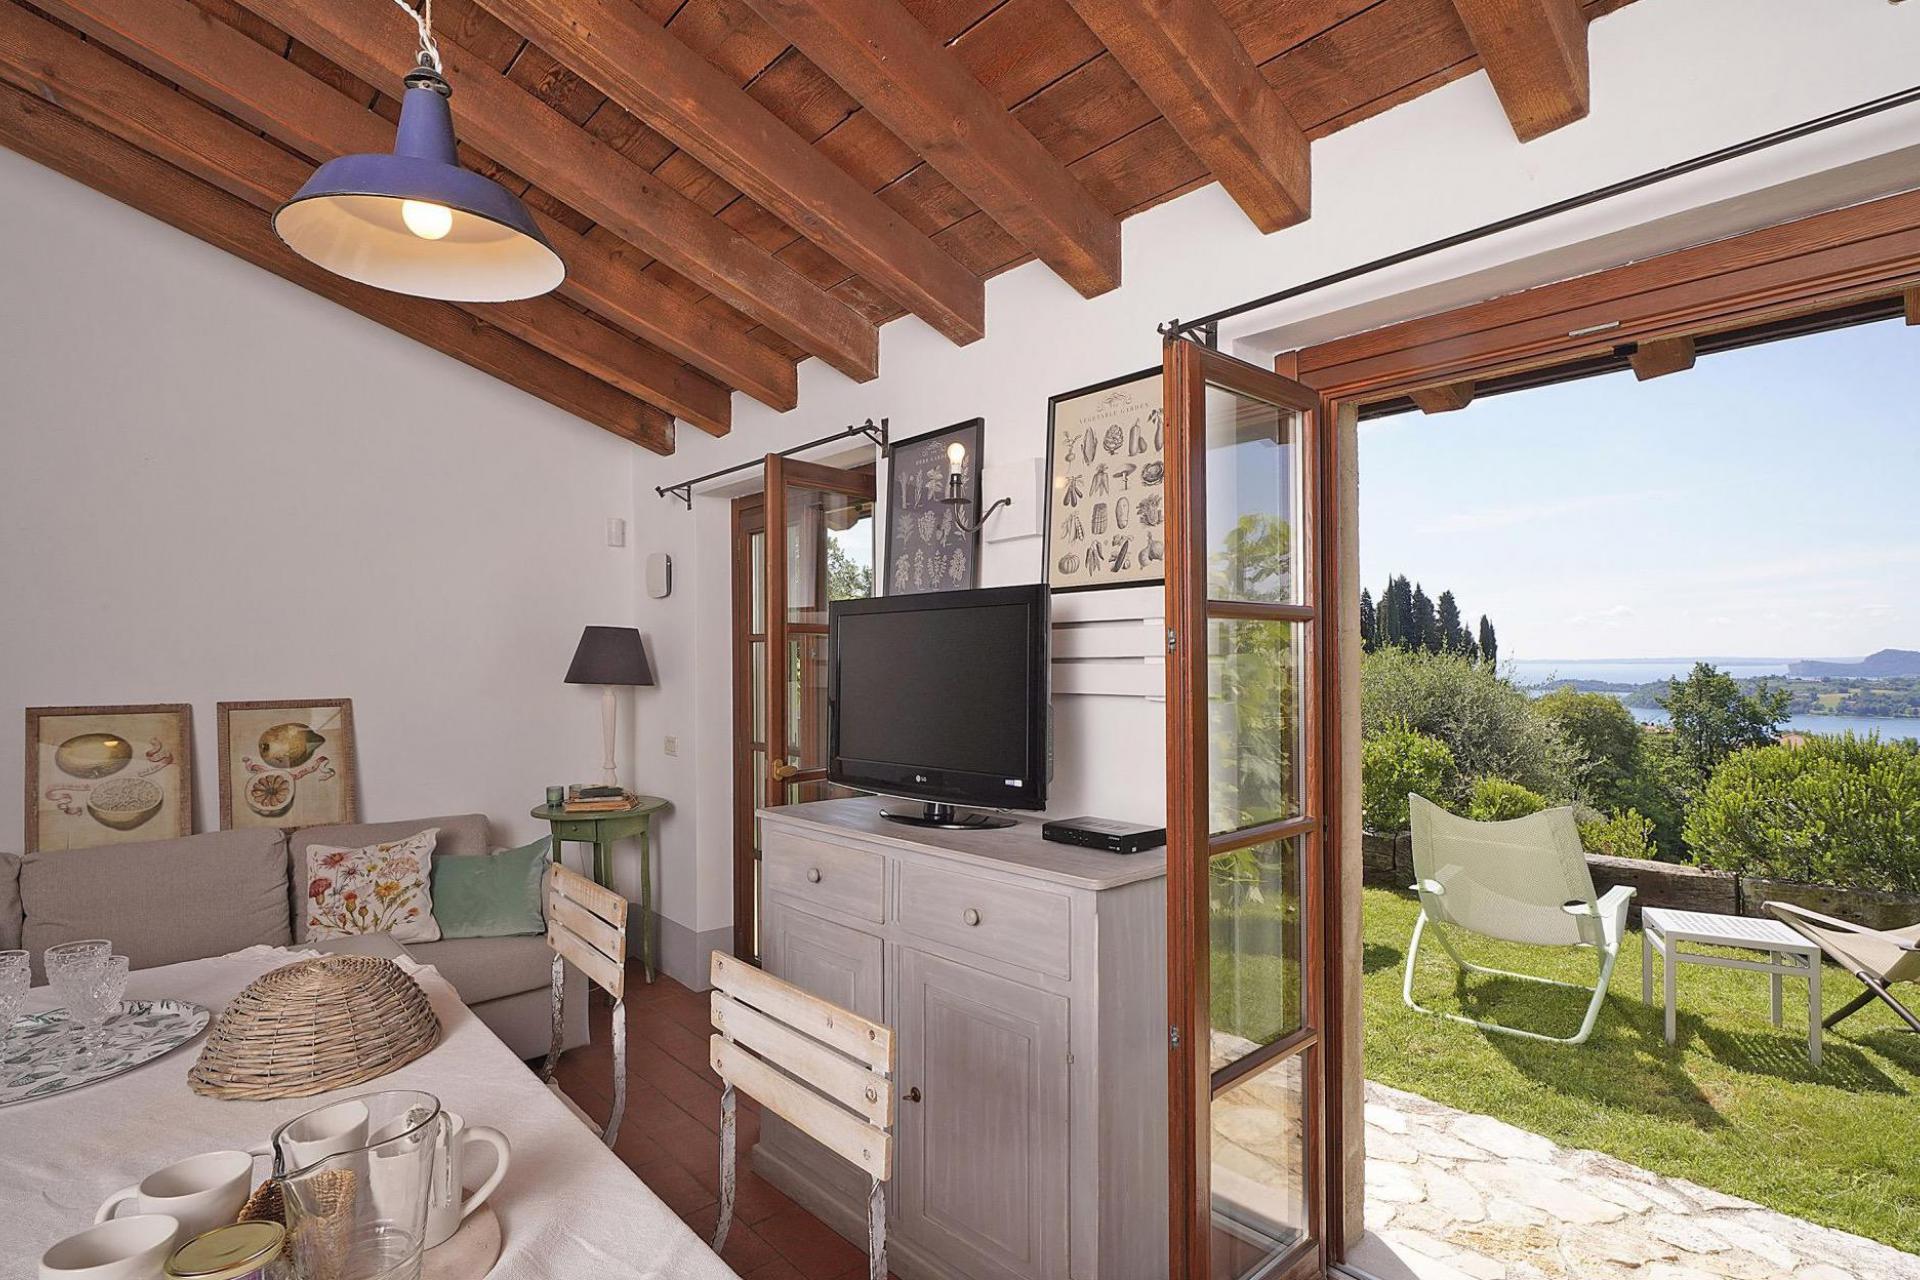 Agriturismo Lake Como and Lake Garda Agriturismo overlooking Lake Garda and stylish interior